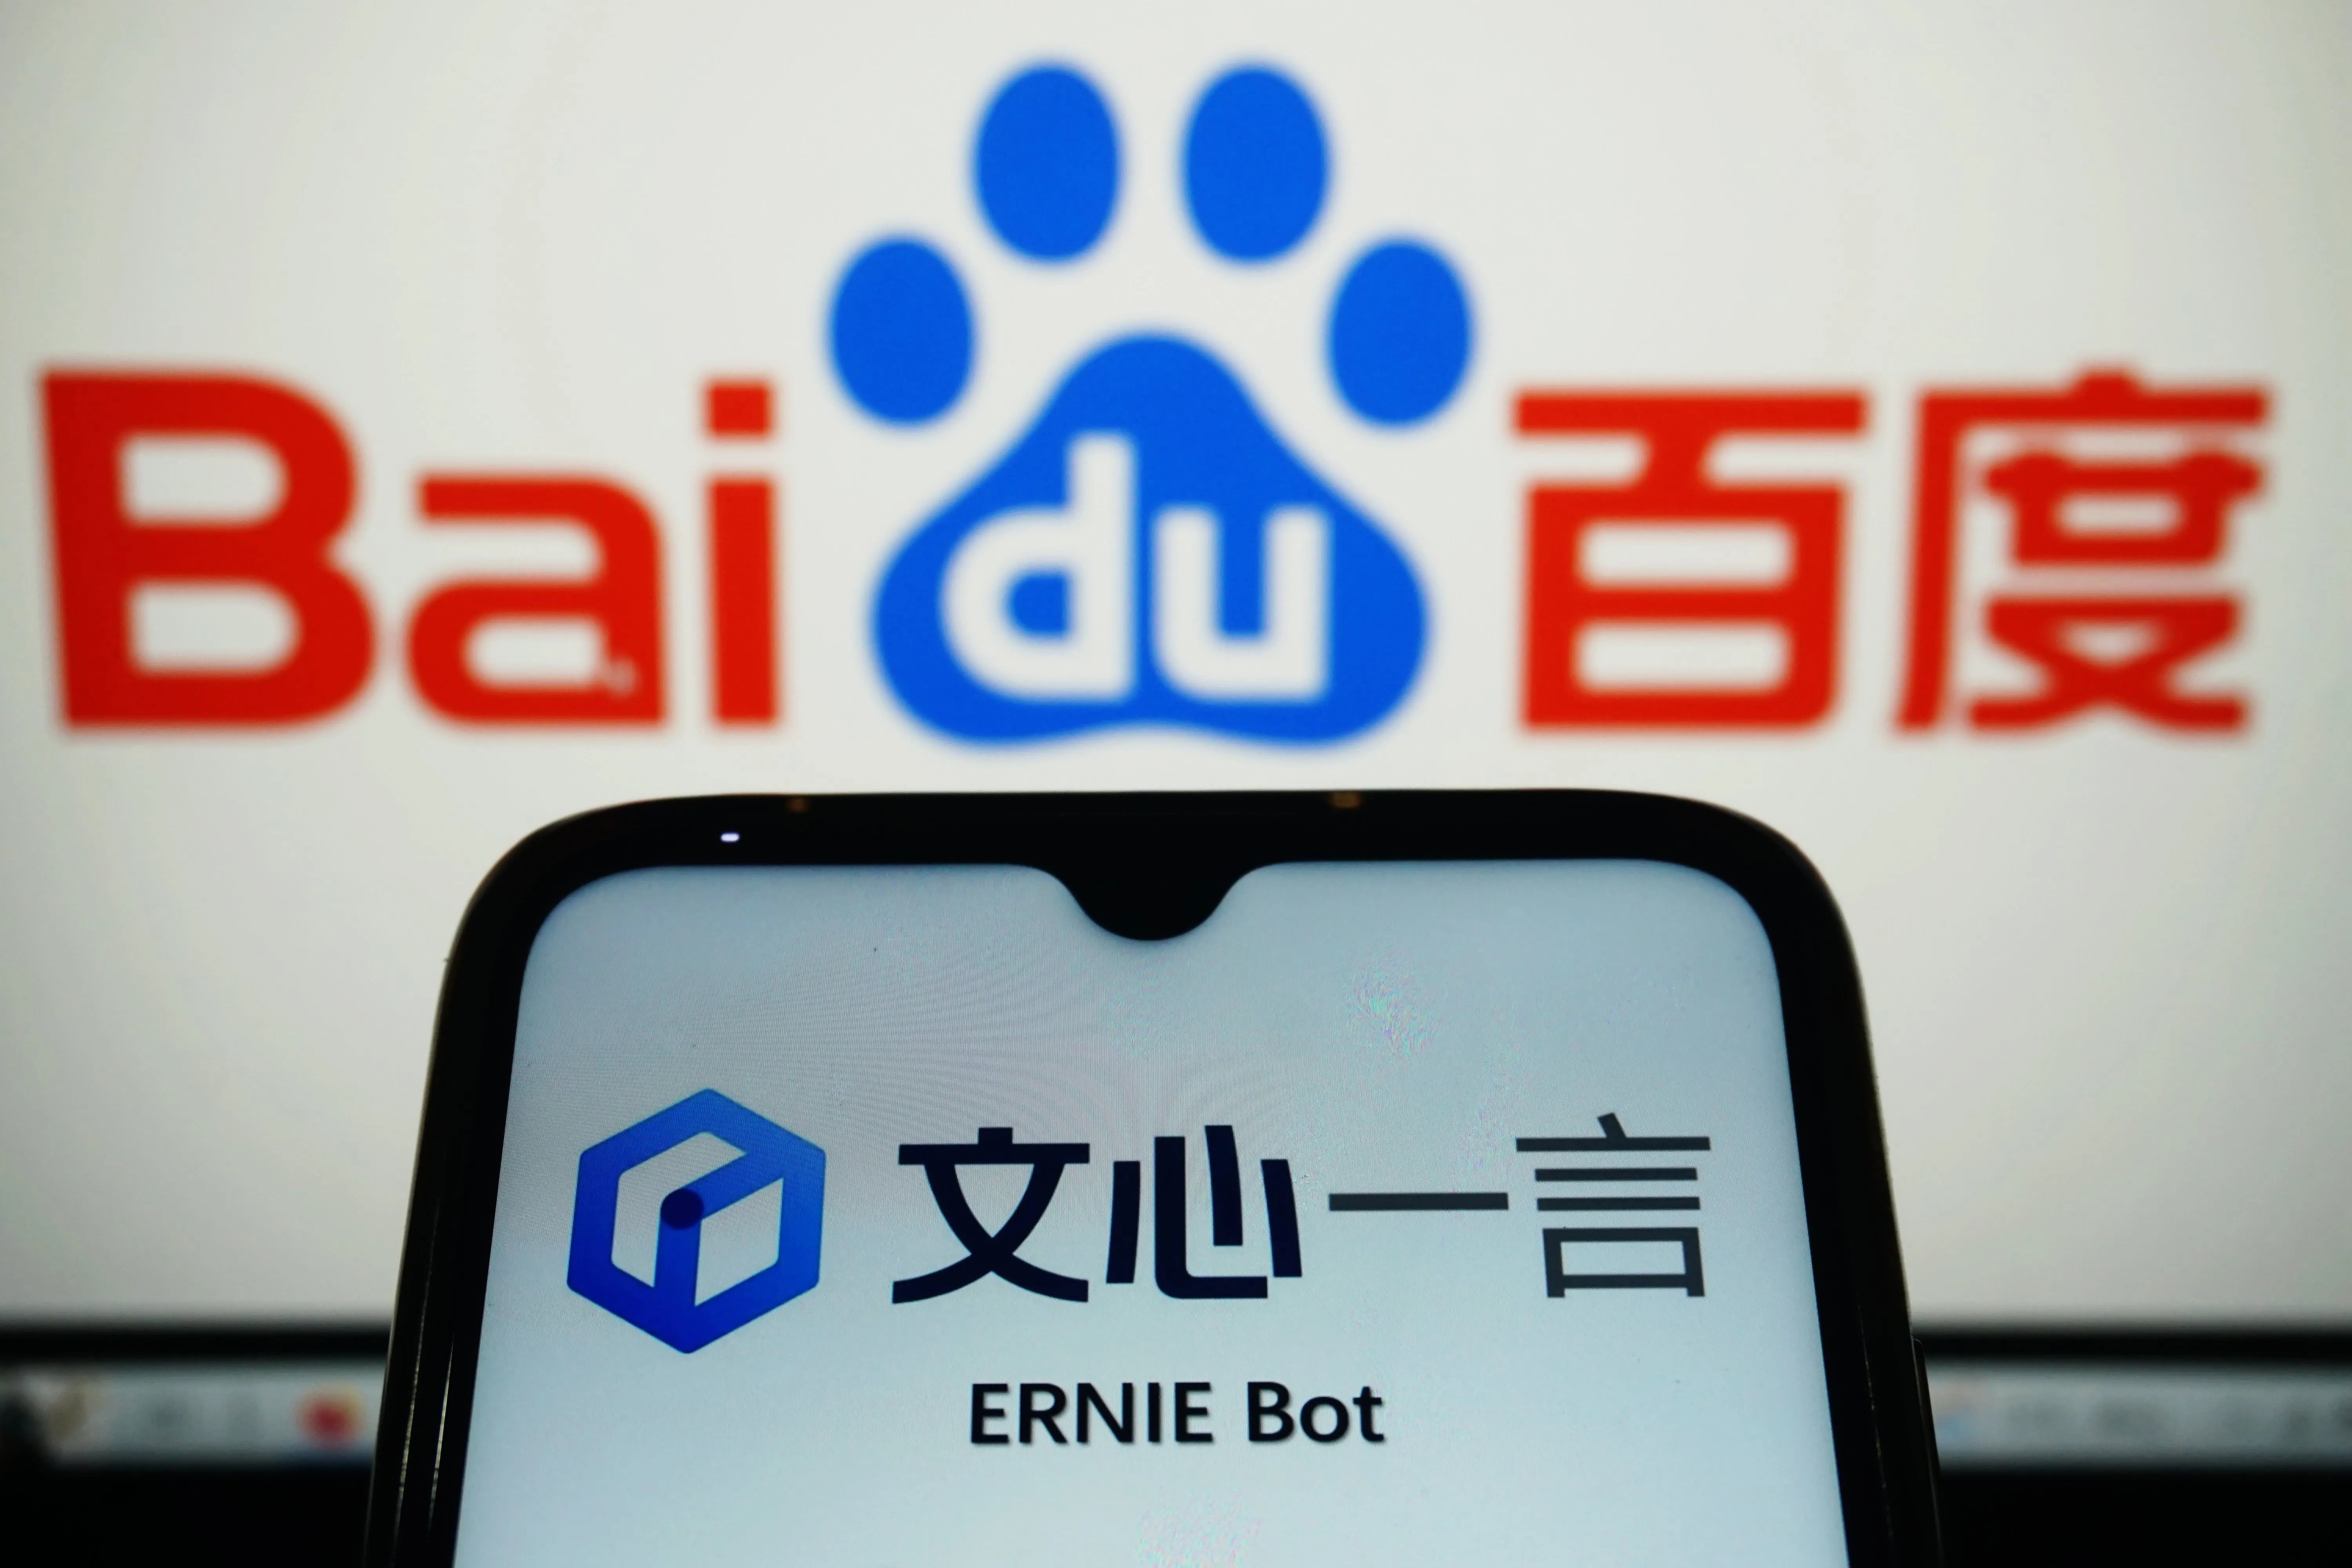 Baidu's Ernie Bot chatbot heeft 200 miljoen gebruikers aangetrokken